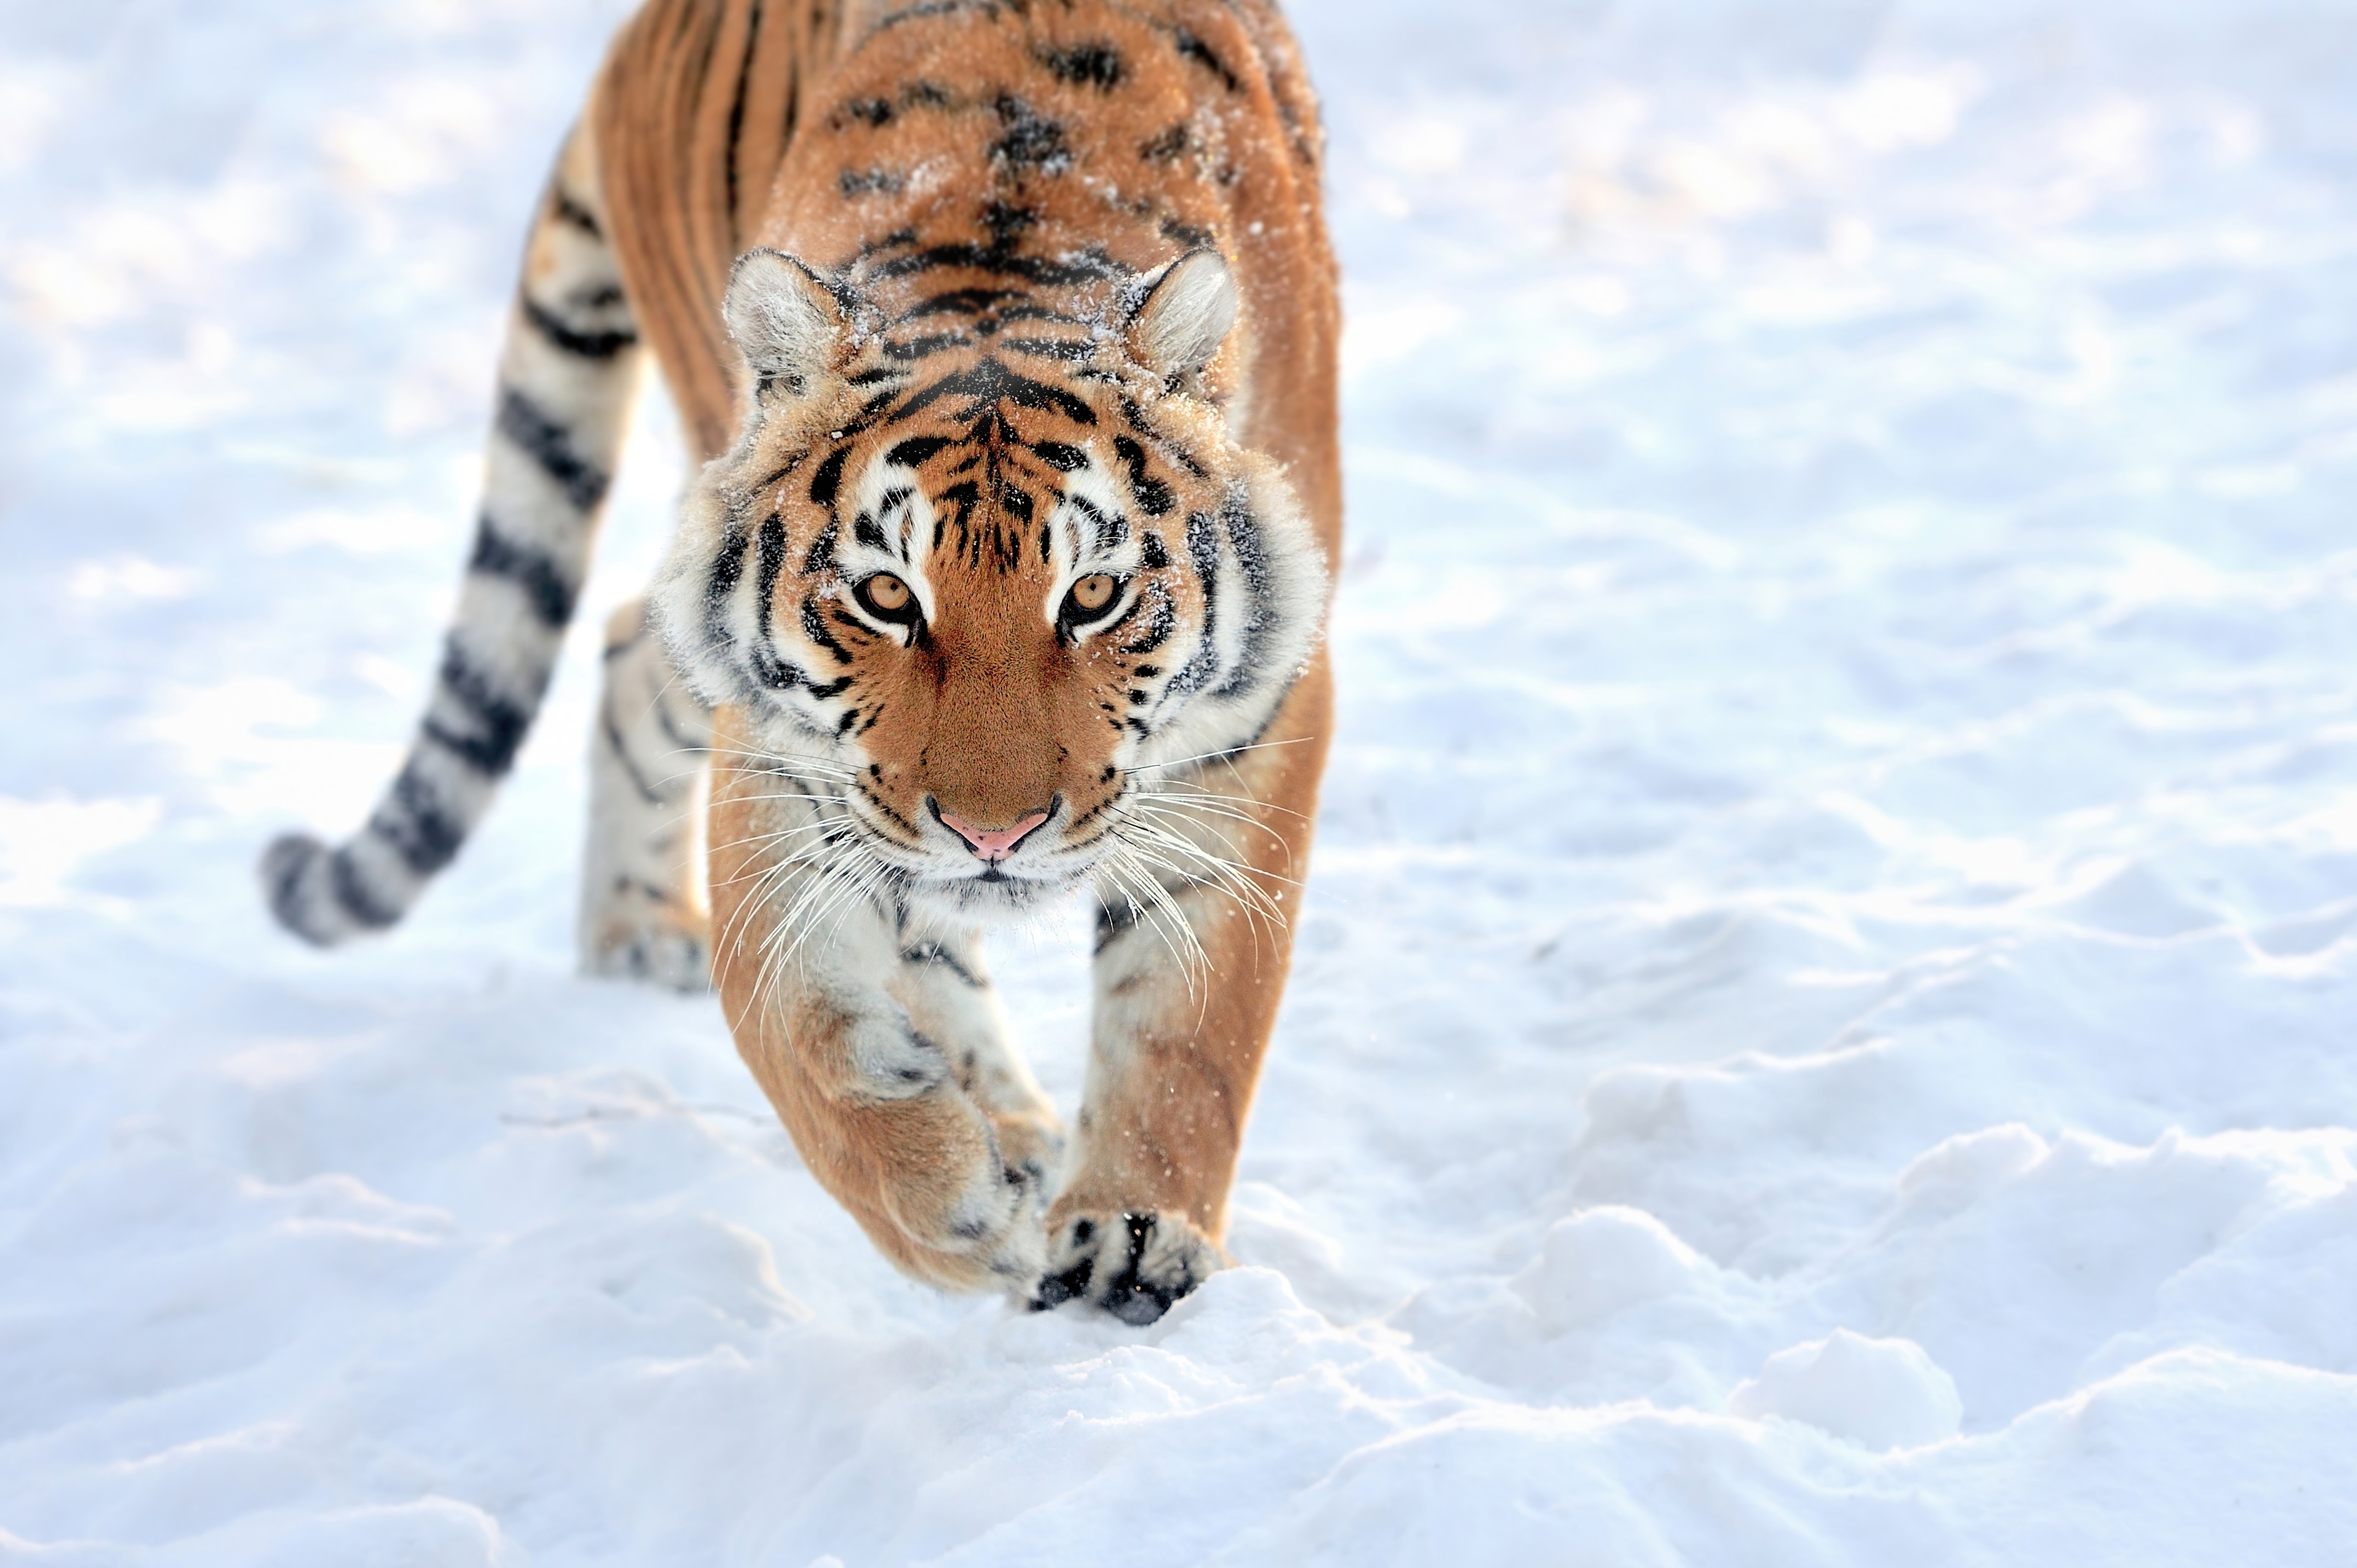 Fondos de pantalla Tigre caminando en la nieve